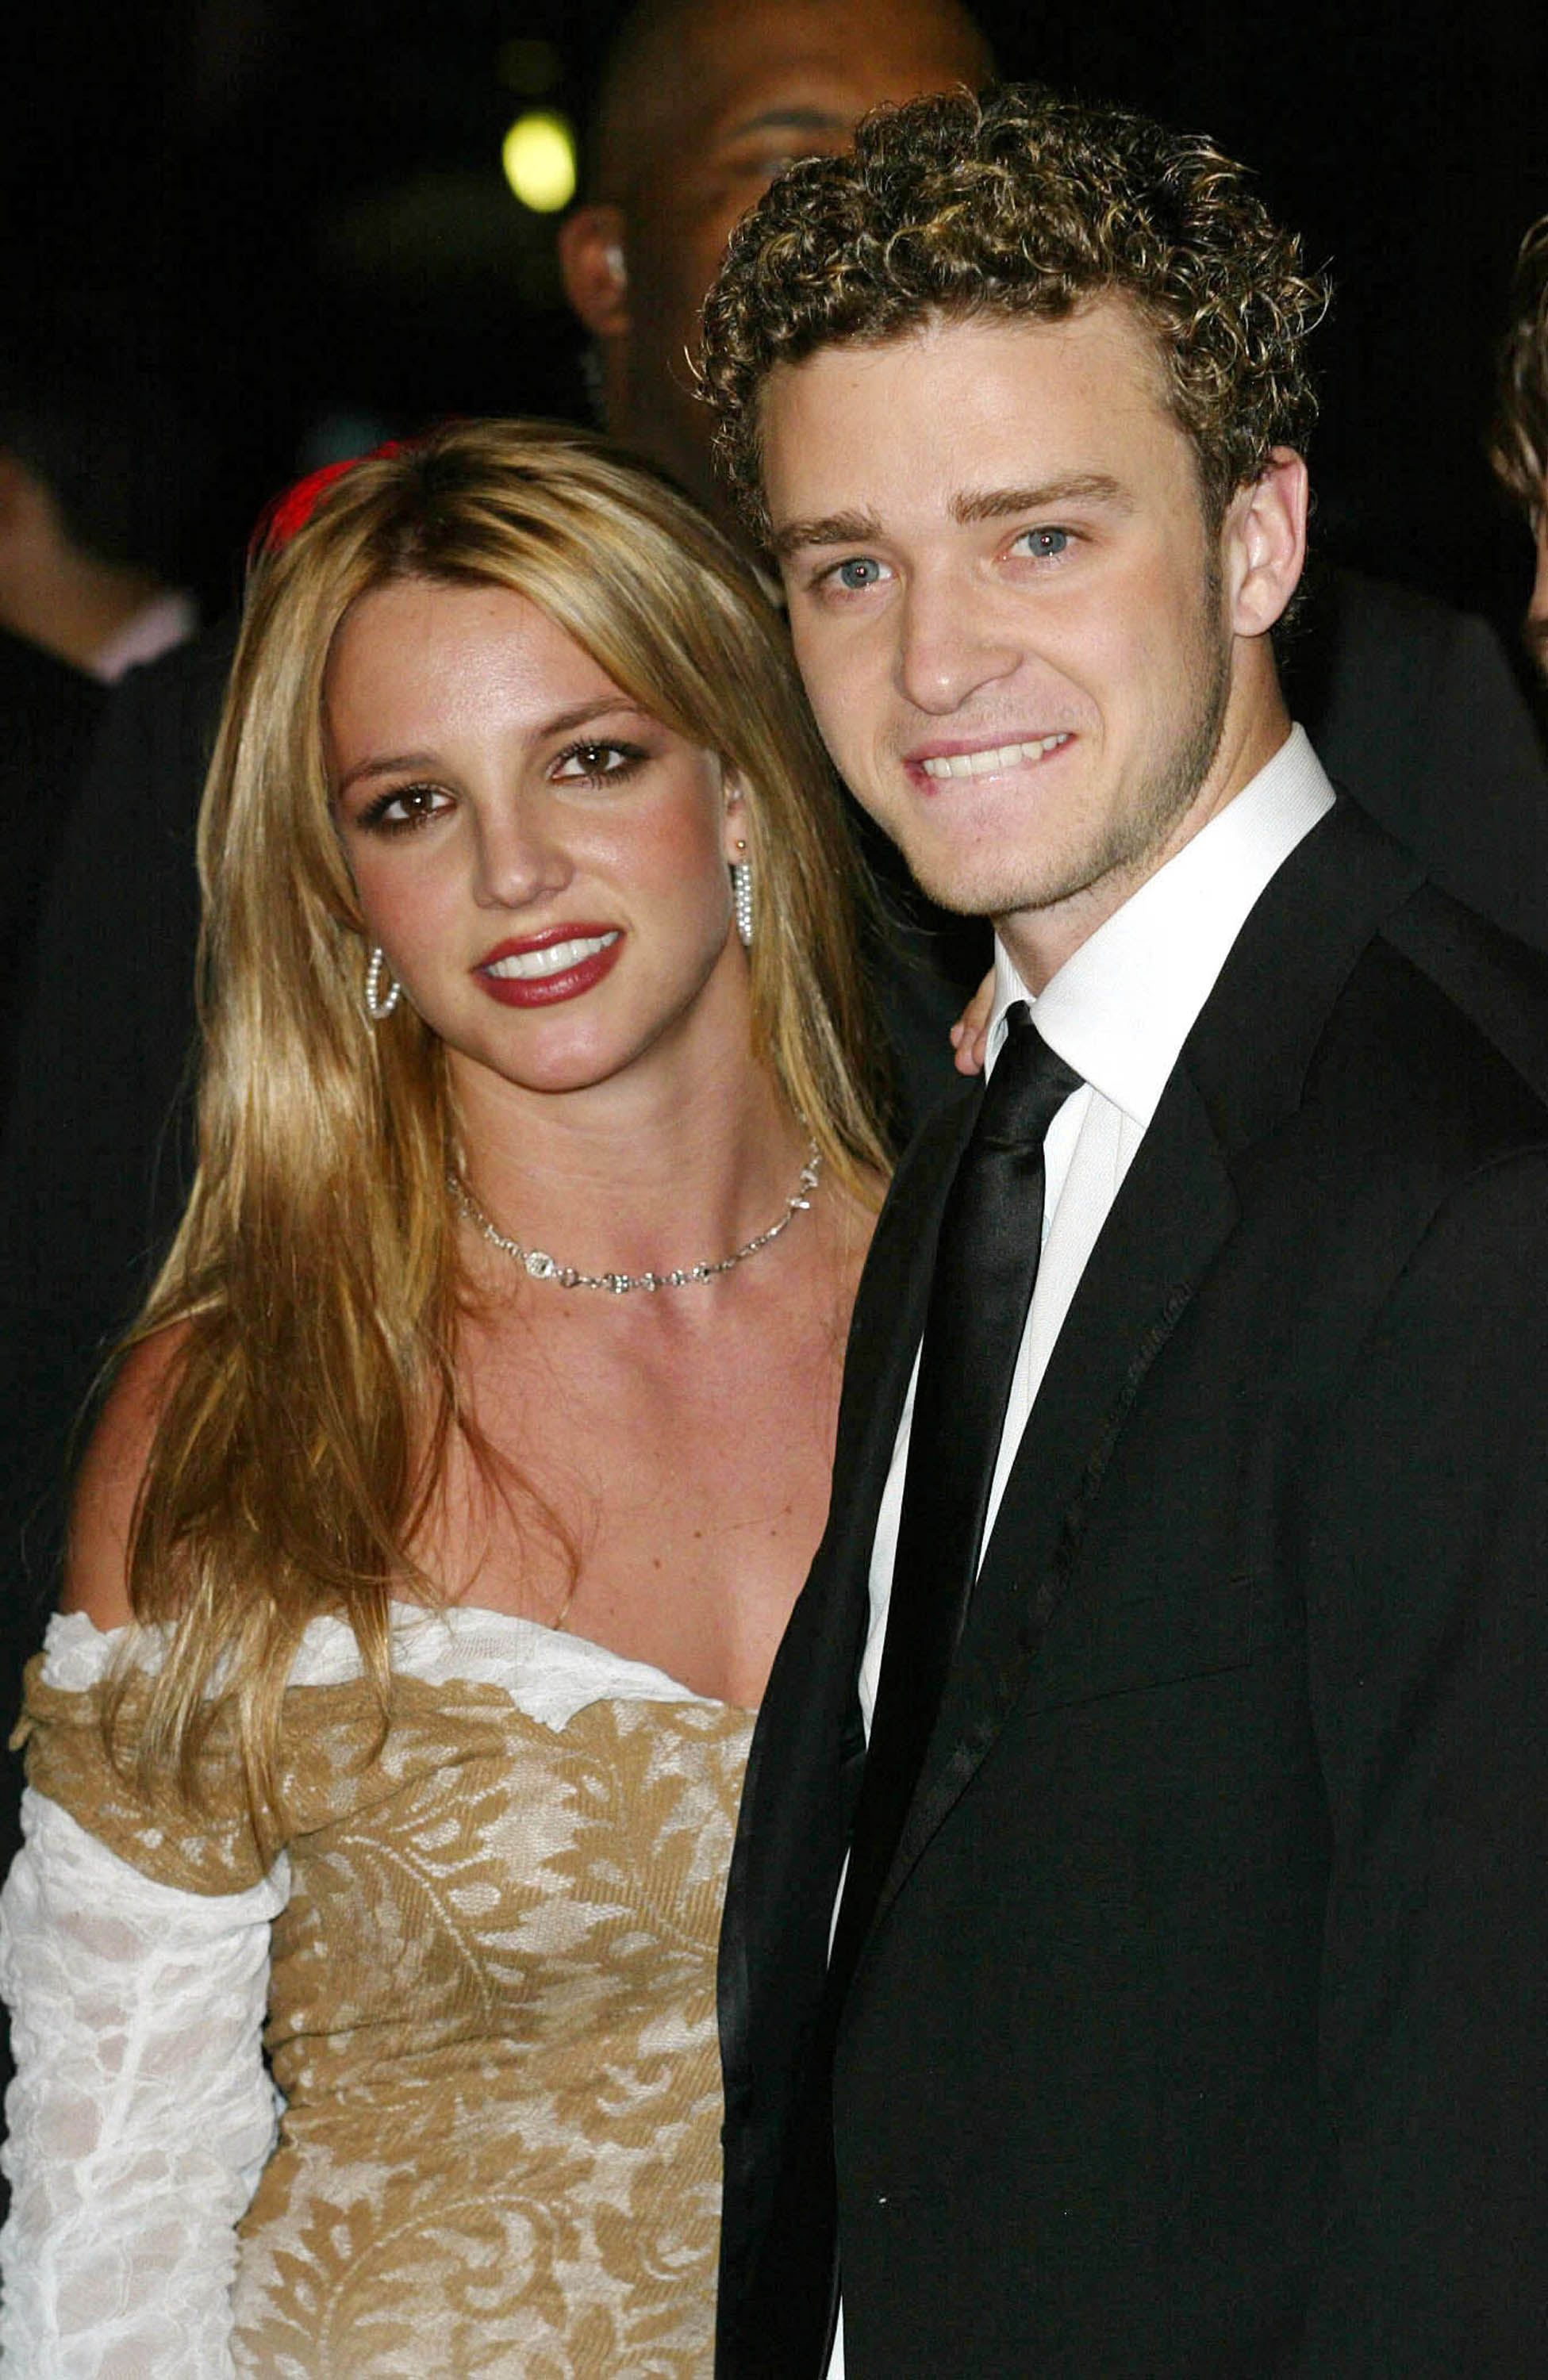 Britney Spears et Justin Timberlake à la soirée Clive Davis pre Grammy à Los Angeles, Californie, le 26 février 2002 | Source : Getty Images